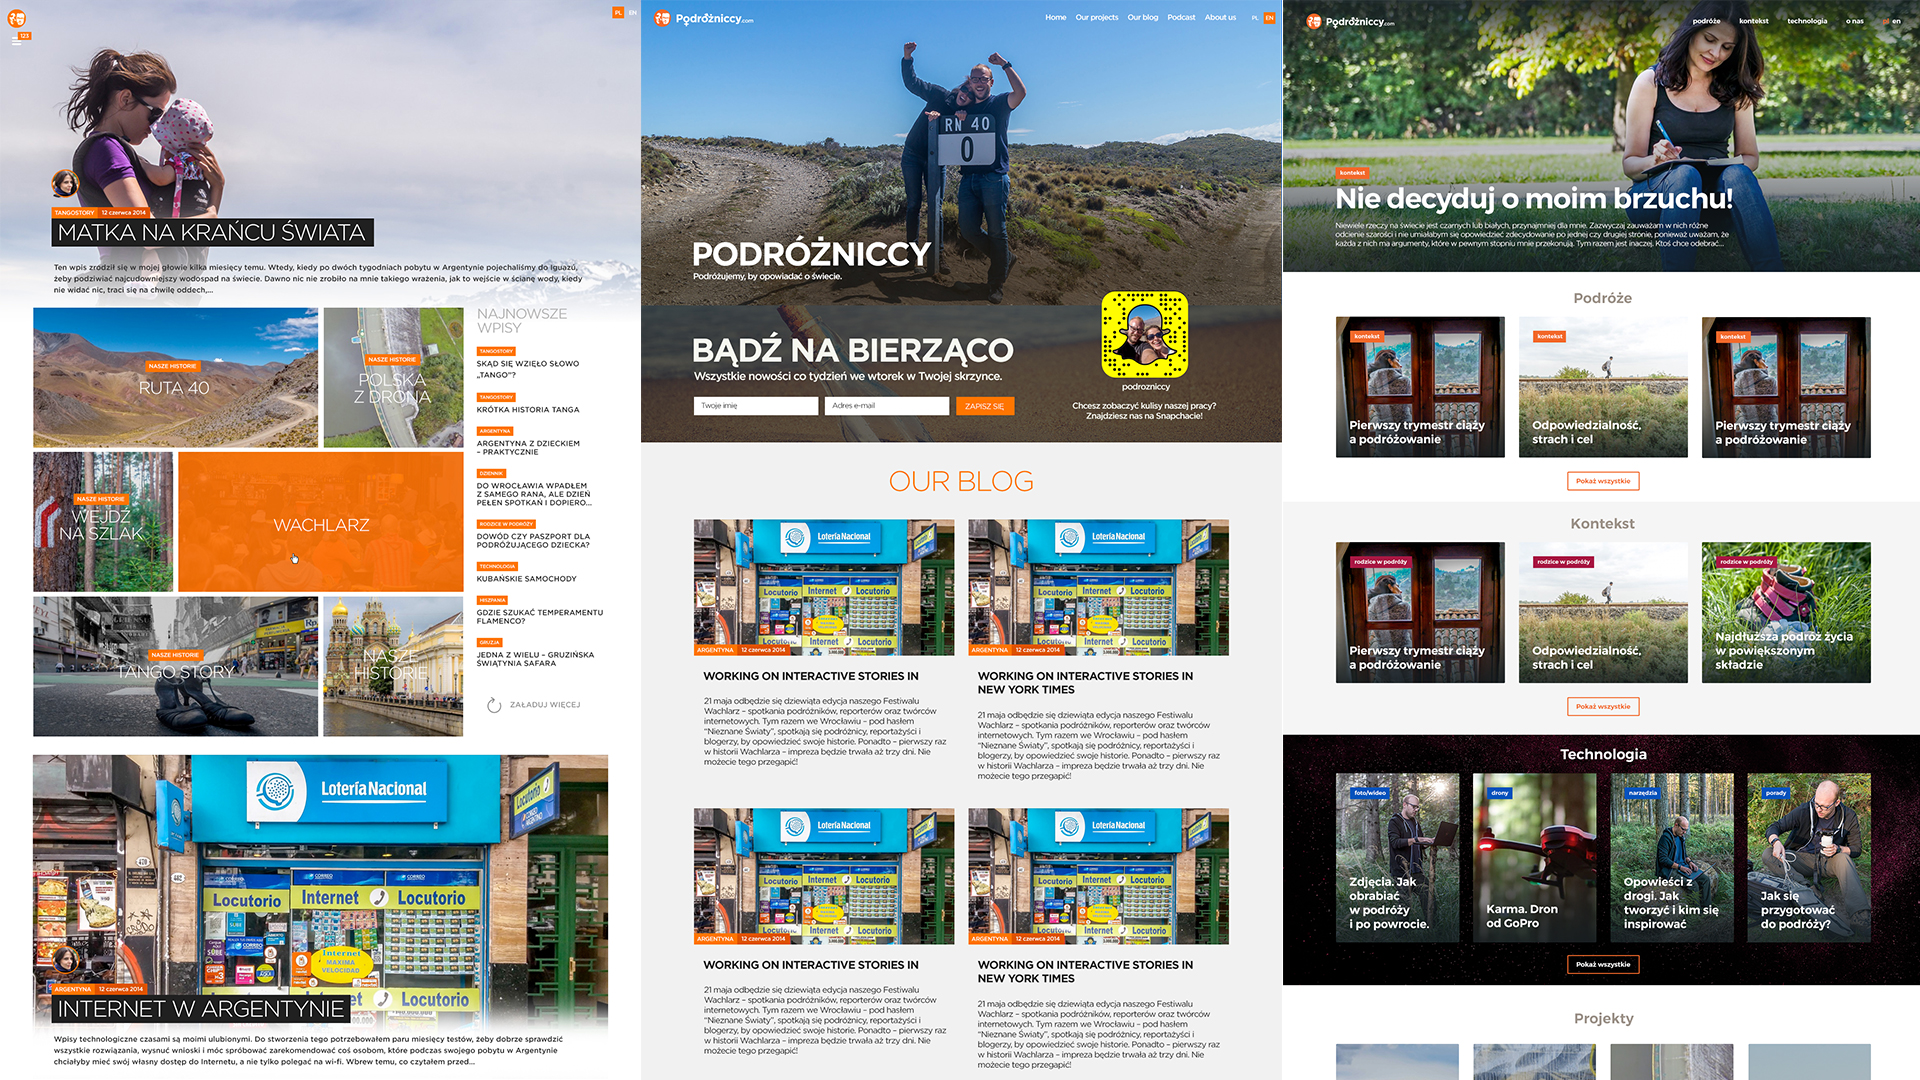 Nowy szablon bloga - Podrozniccy. Historyczne layouty. Zmiany wersji. 